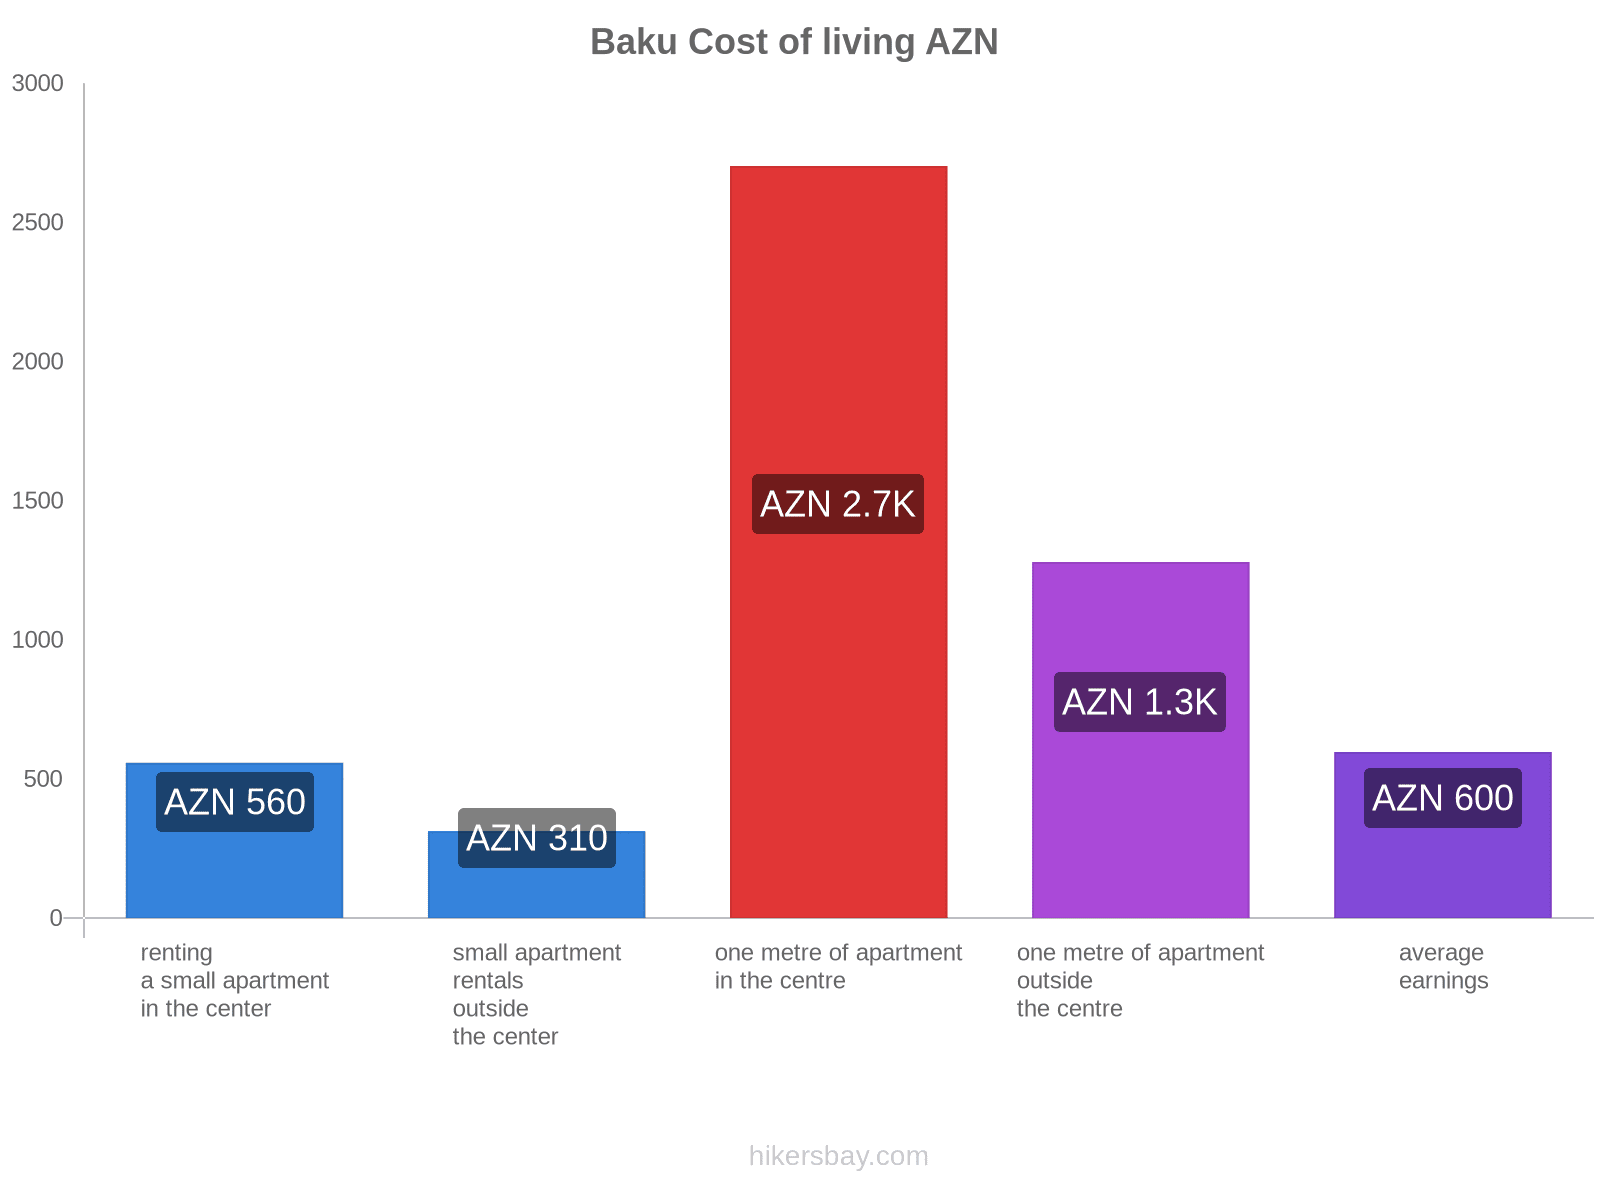 Baku cost of living hikersbay.com